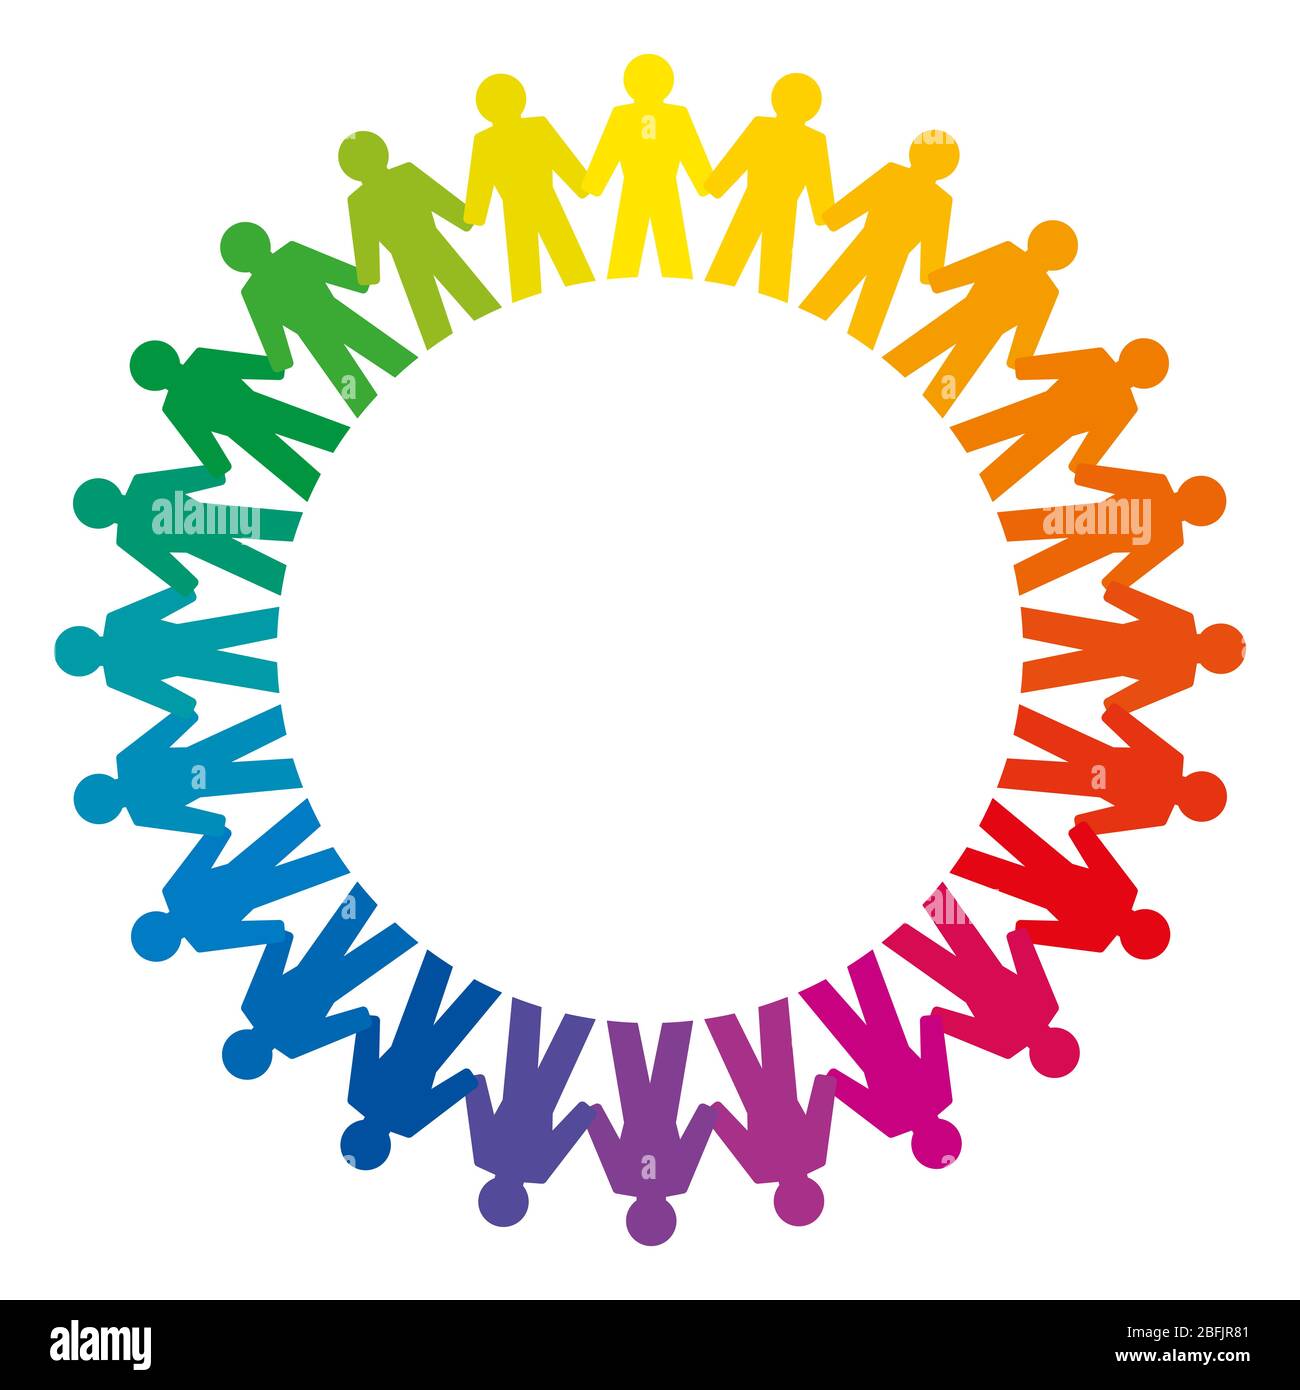 Persone che tengono le mani formando un grande cerchio arcobaleno. Simbolo astratto di persone collegate che stanno in cerchio per esprimere amicizia, amore e armonia. Foto Stock